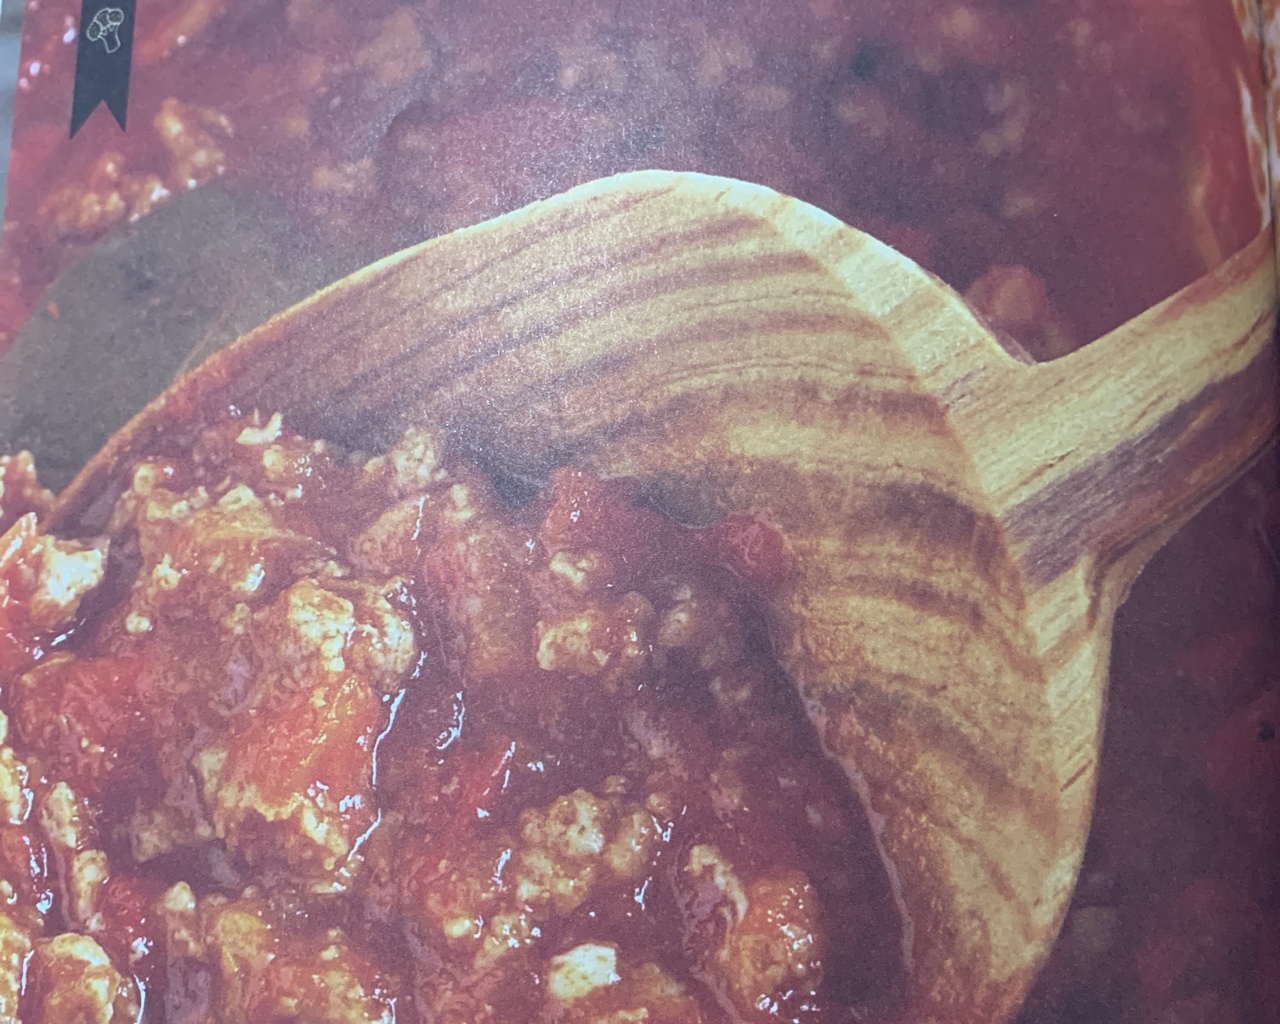 意式番茄肉酱的做法